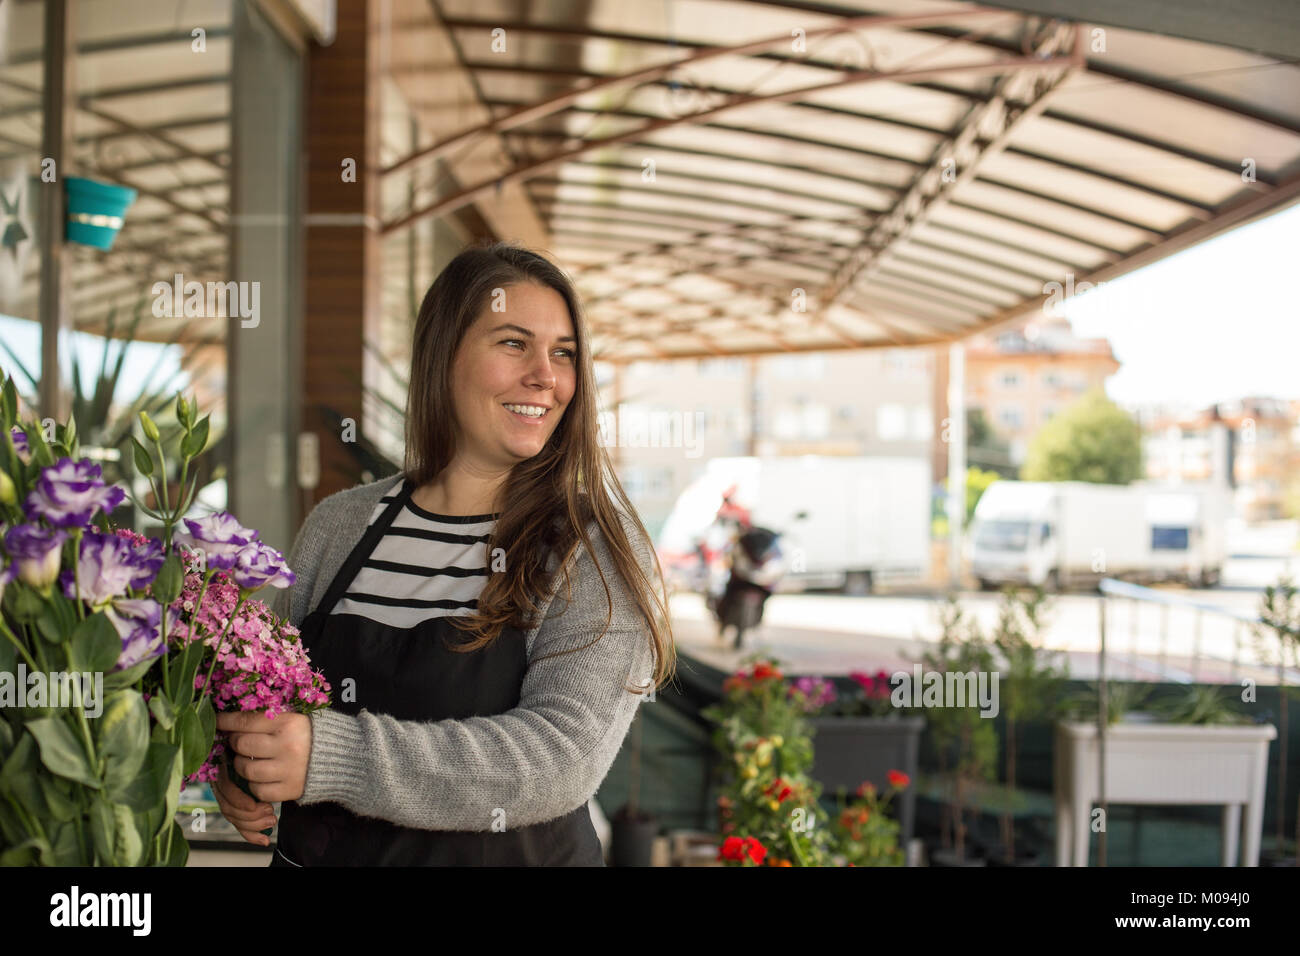 Small business concept. Femme Smilng la cueillette des fleurs fleuriste dans un magasin de fleur. Banque D'Images